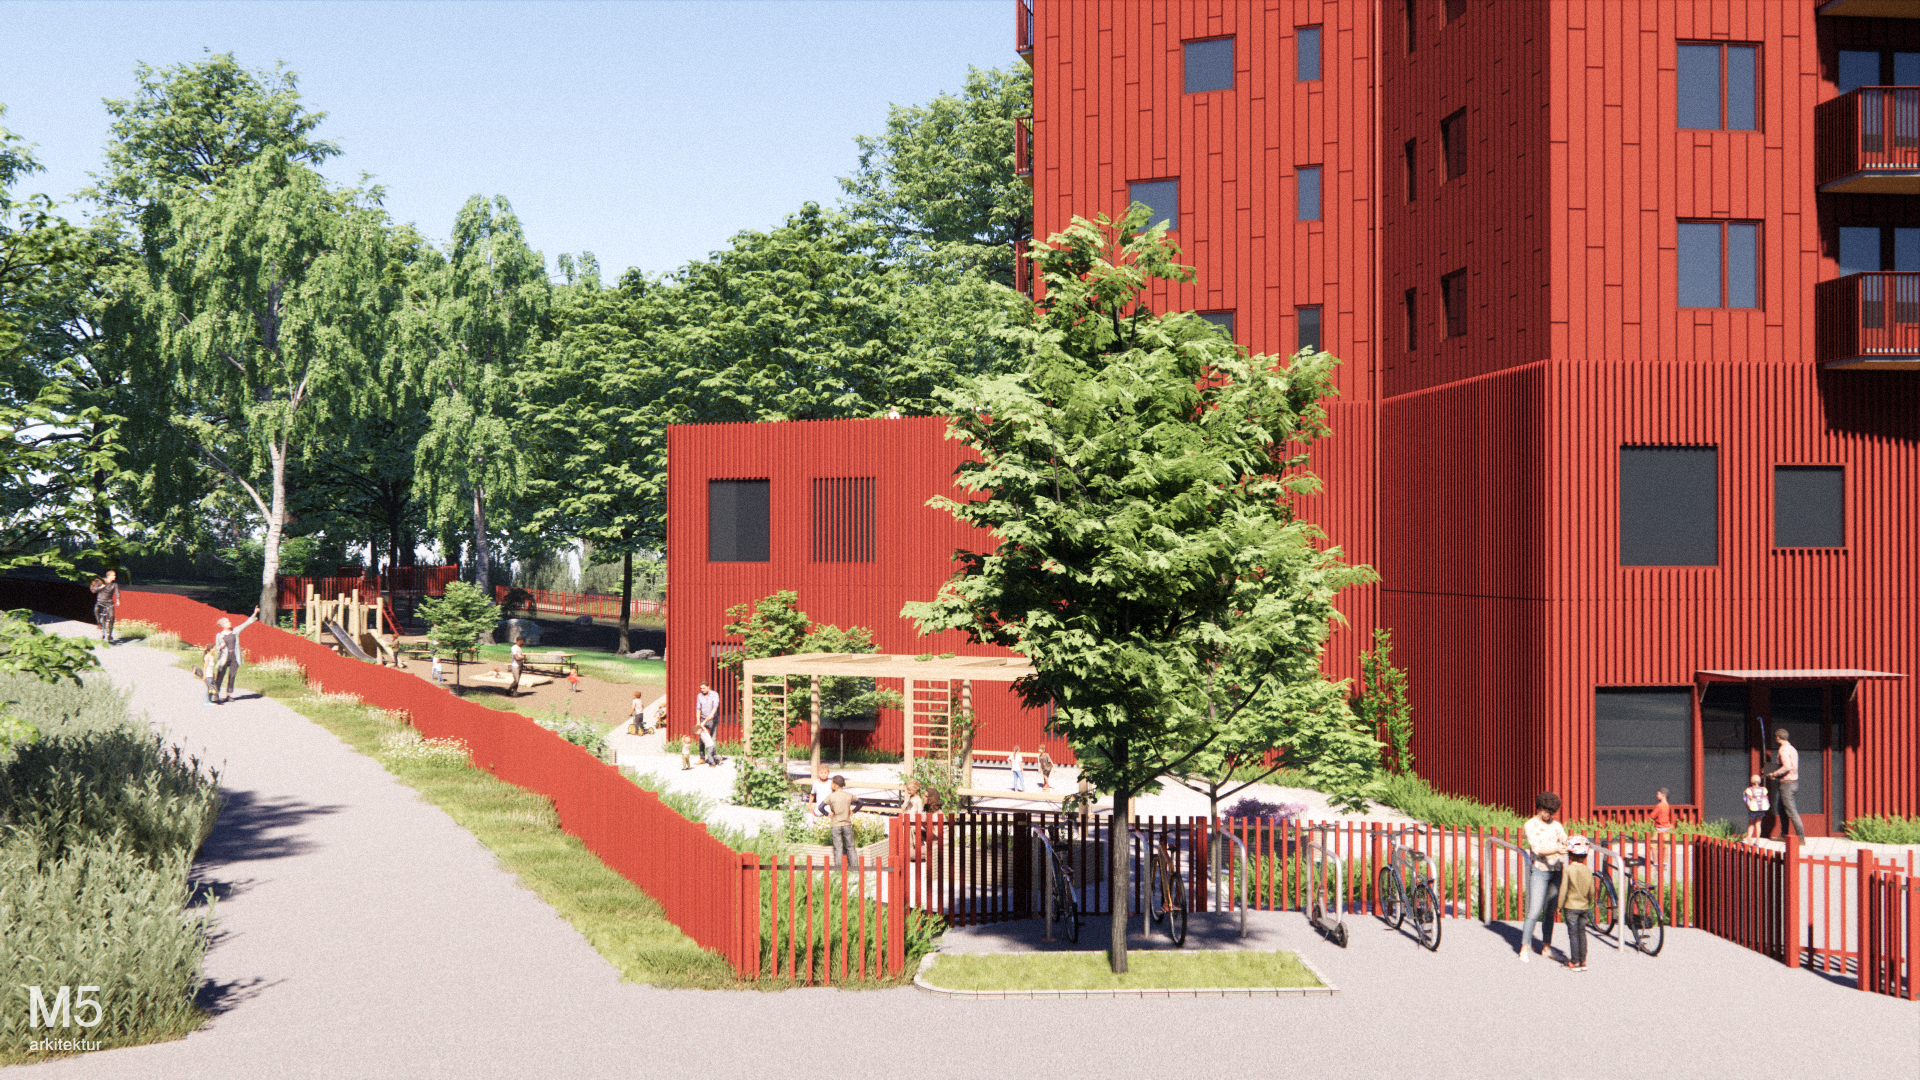 Visionsbild från gatuperspektiv. Rött trähus och flera våningar. Intill huset syns ett rött staket, träd och lekredskap för barn. Bredvid staket finns en gångväg.